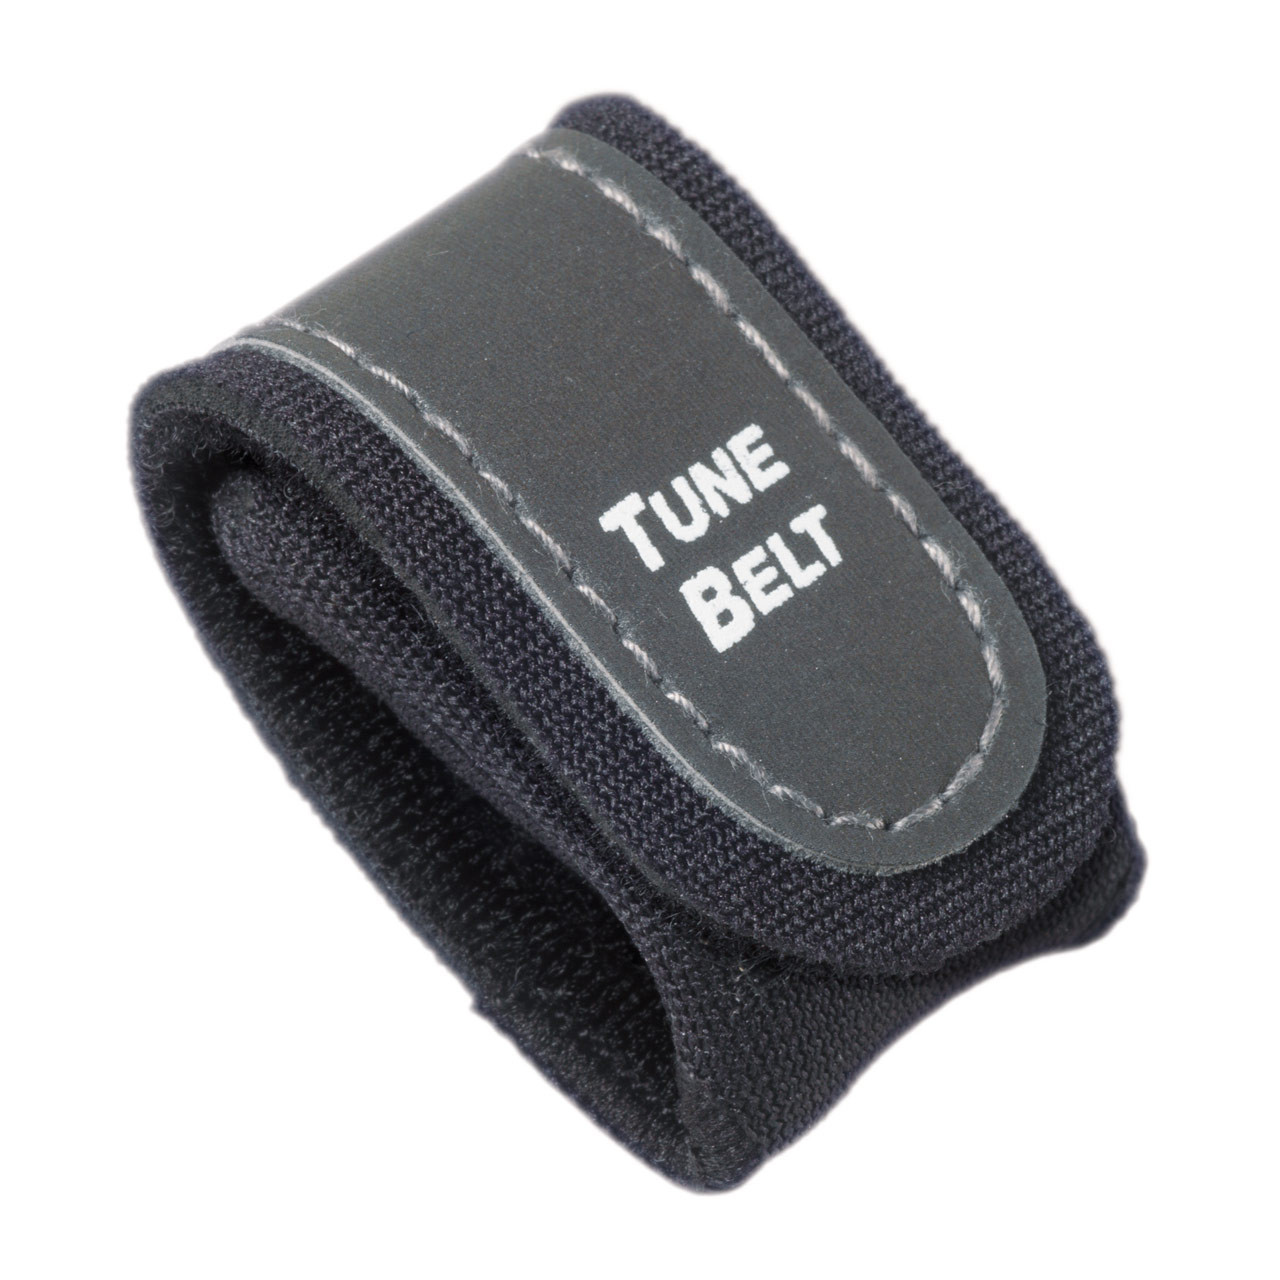 Sensor Case | Nike+ iPod Kit Sensor SC1 Tune Belt